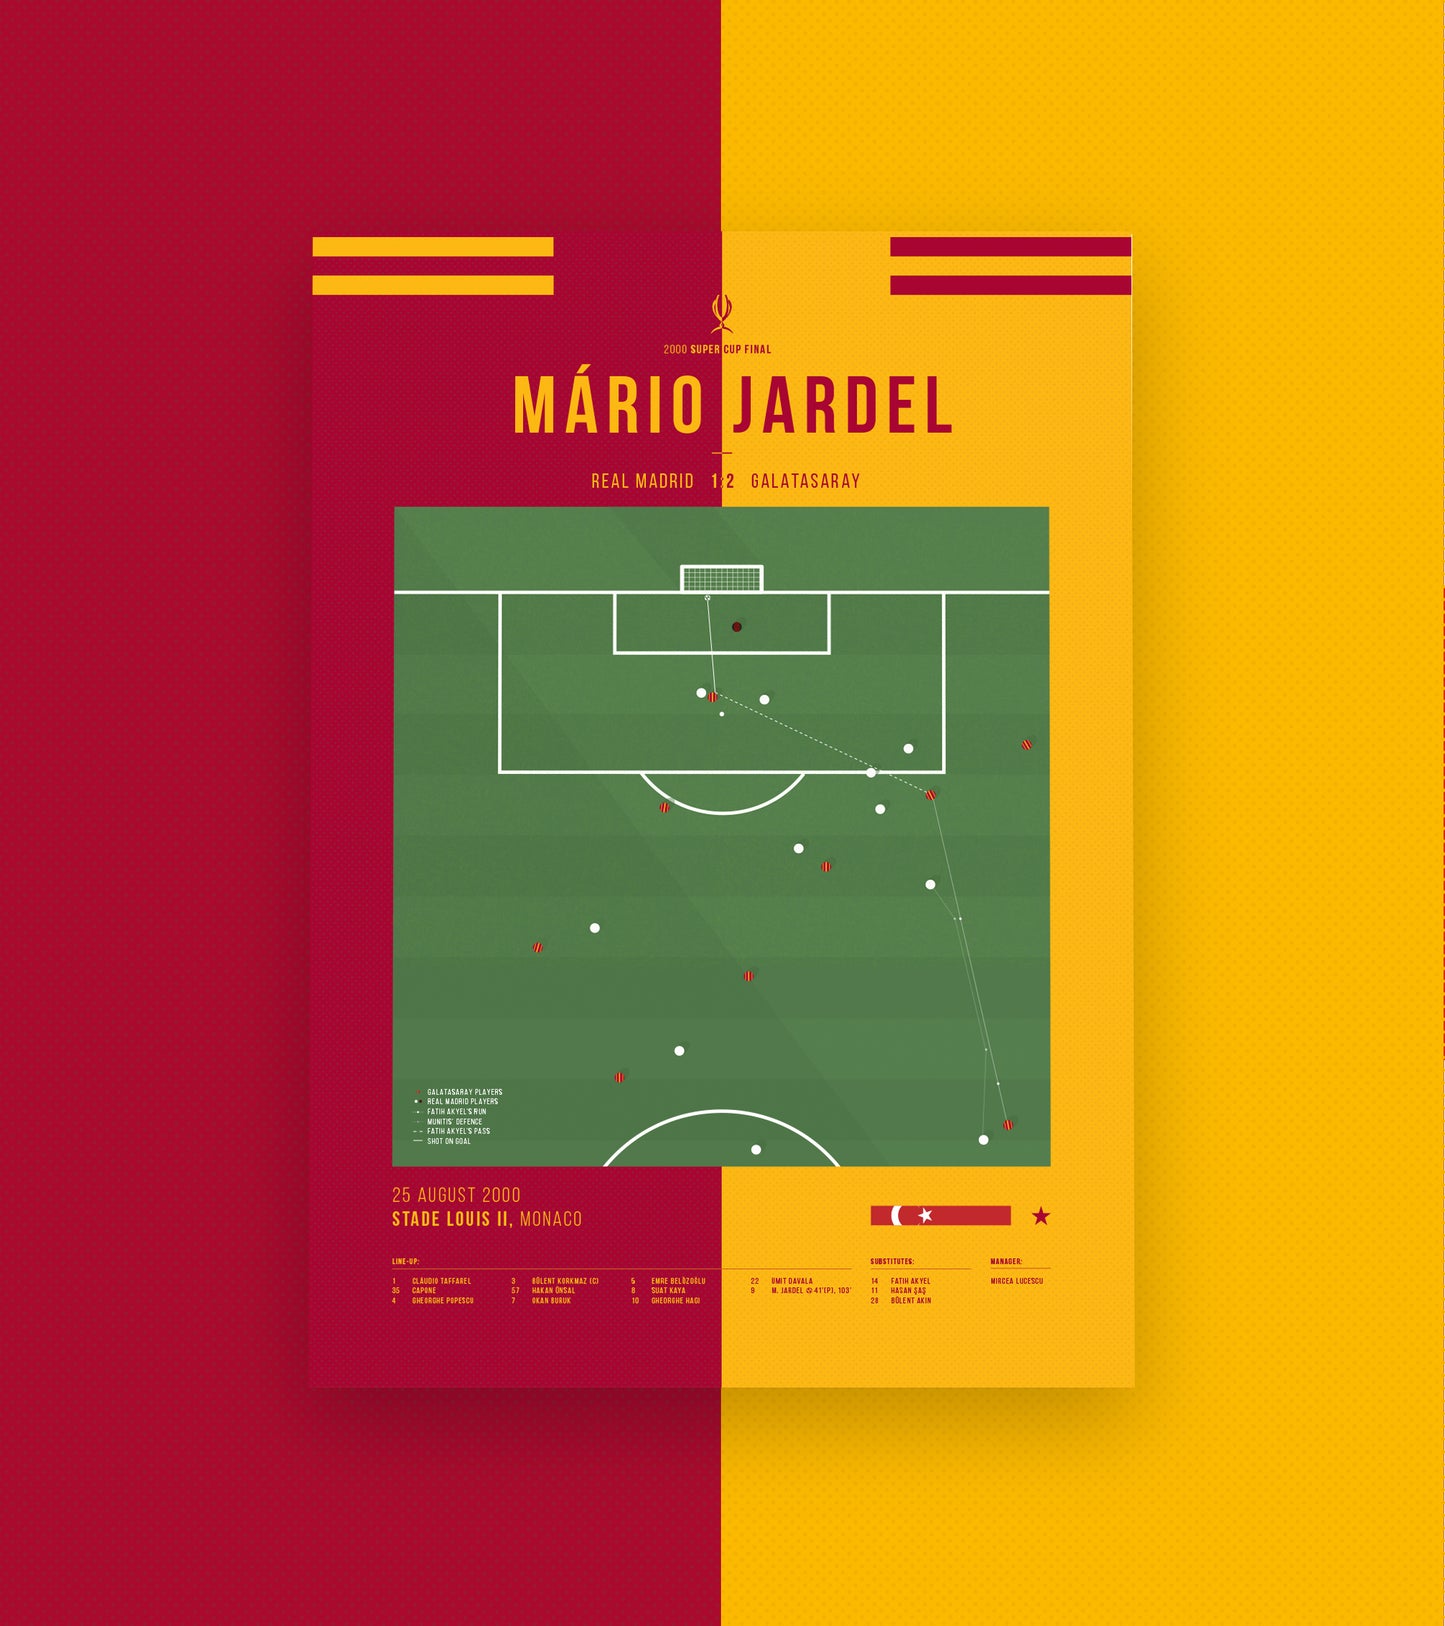 Mário Jardels "Golden Goal"